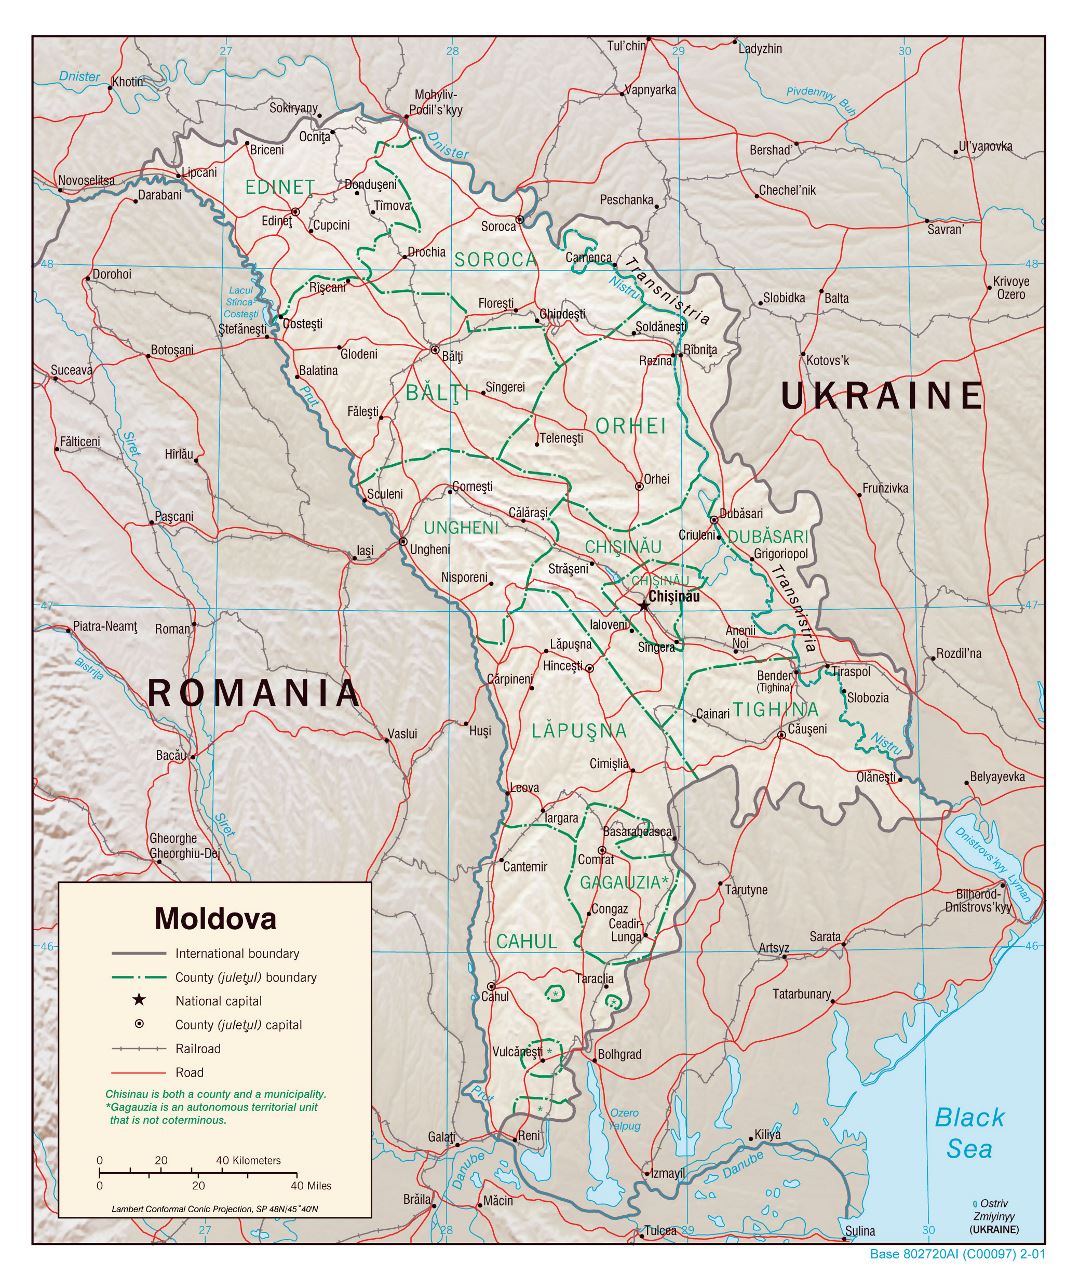 Grande detallado mapa política y administrativa de Moldavia con alivio, carreteras, vías férreas y principales ciudades - 2001